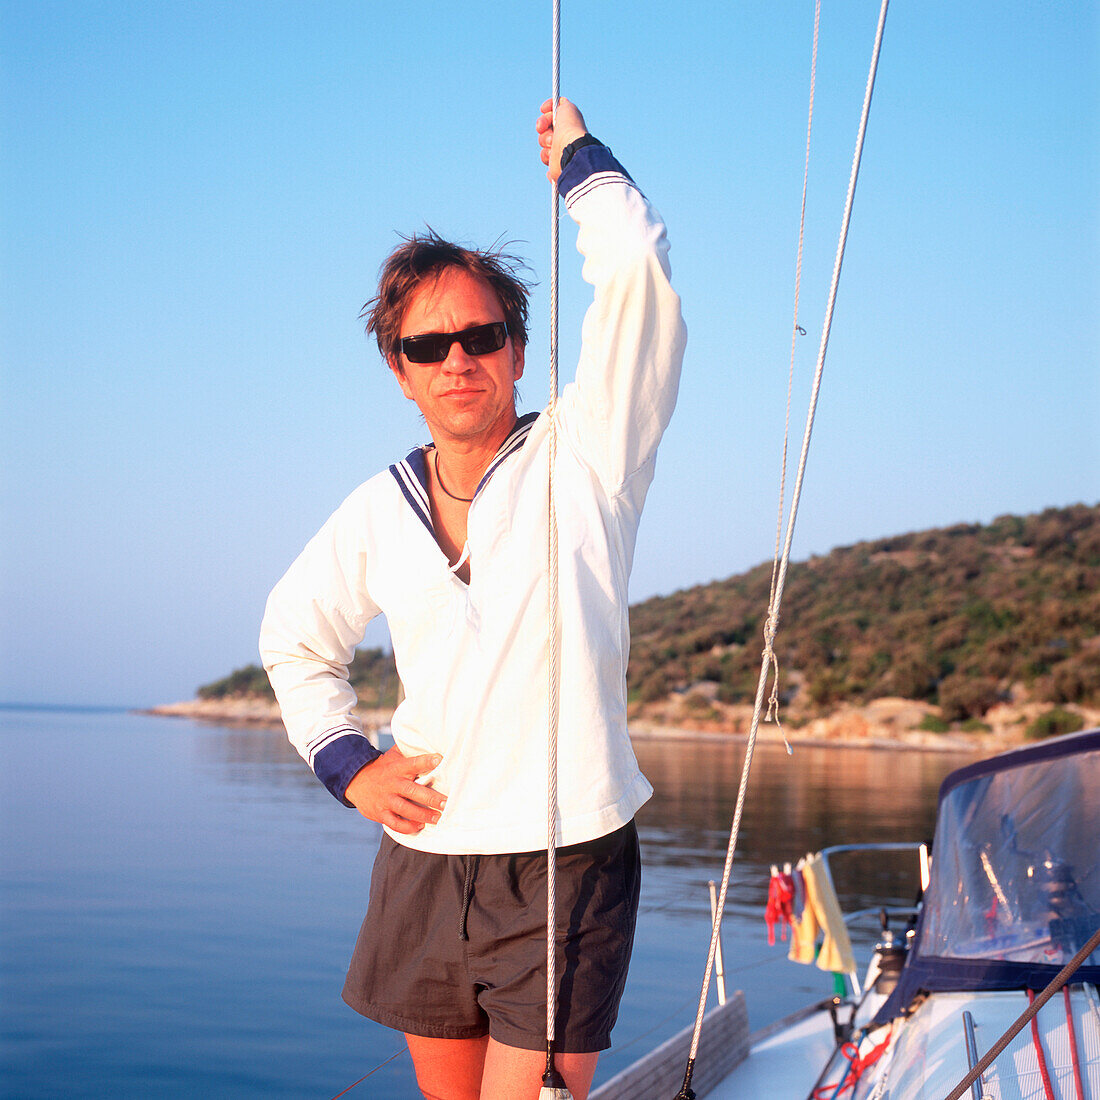 Mann im Matrosenhemd auf einem Segelboot, Porträt, Adria, Dalmatien, Kroatien